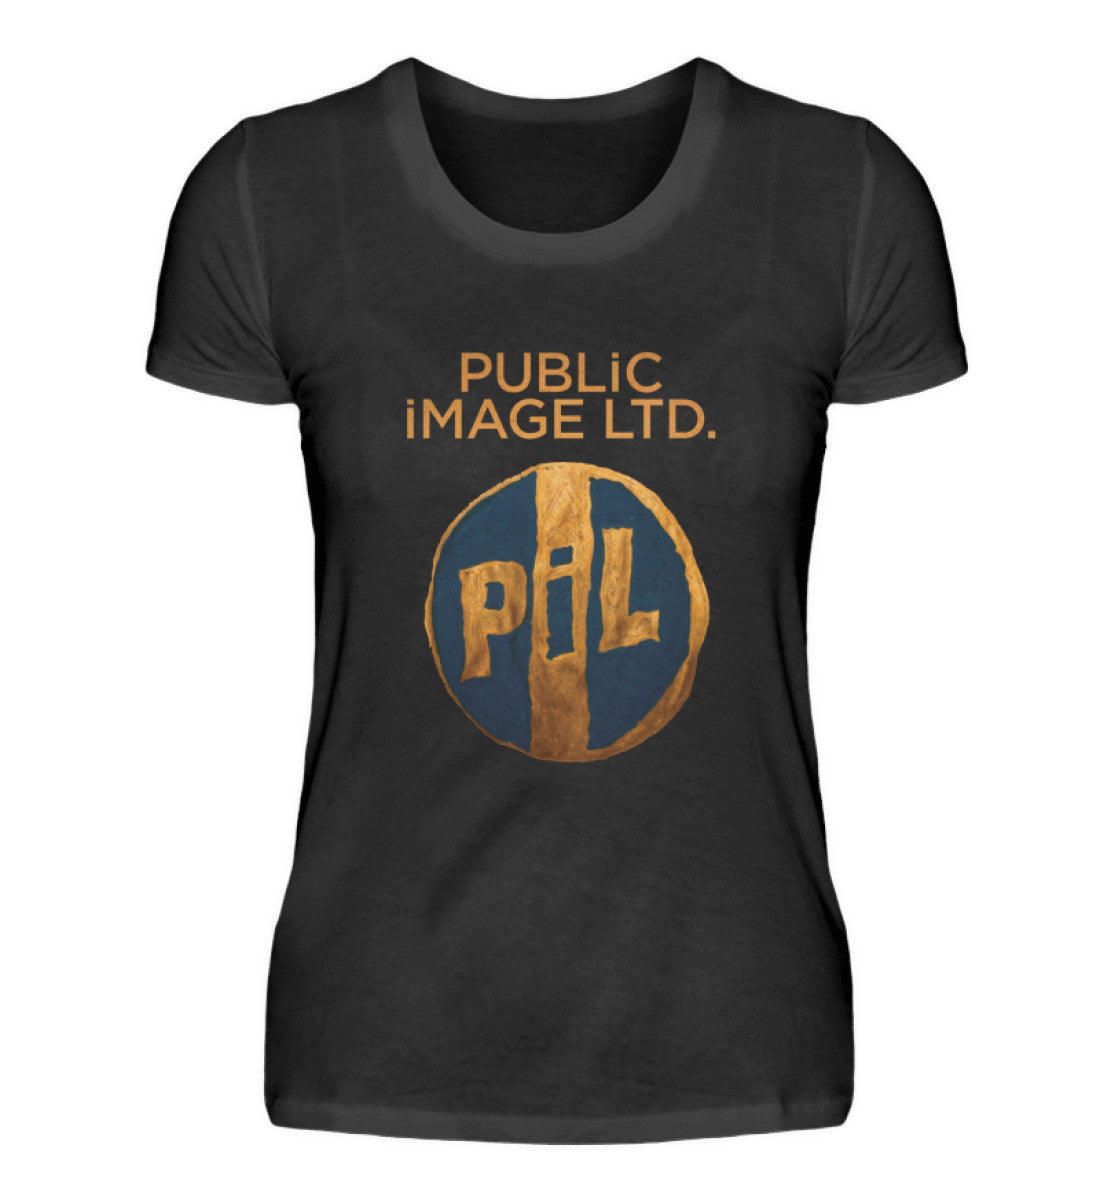 Public Image Ltd T-Shirt Women